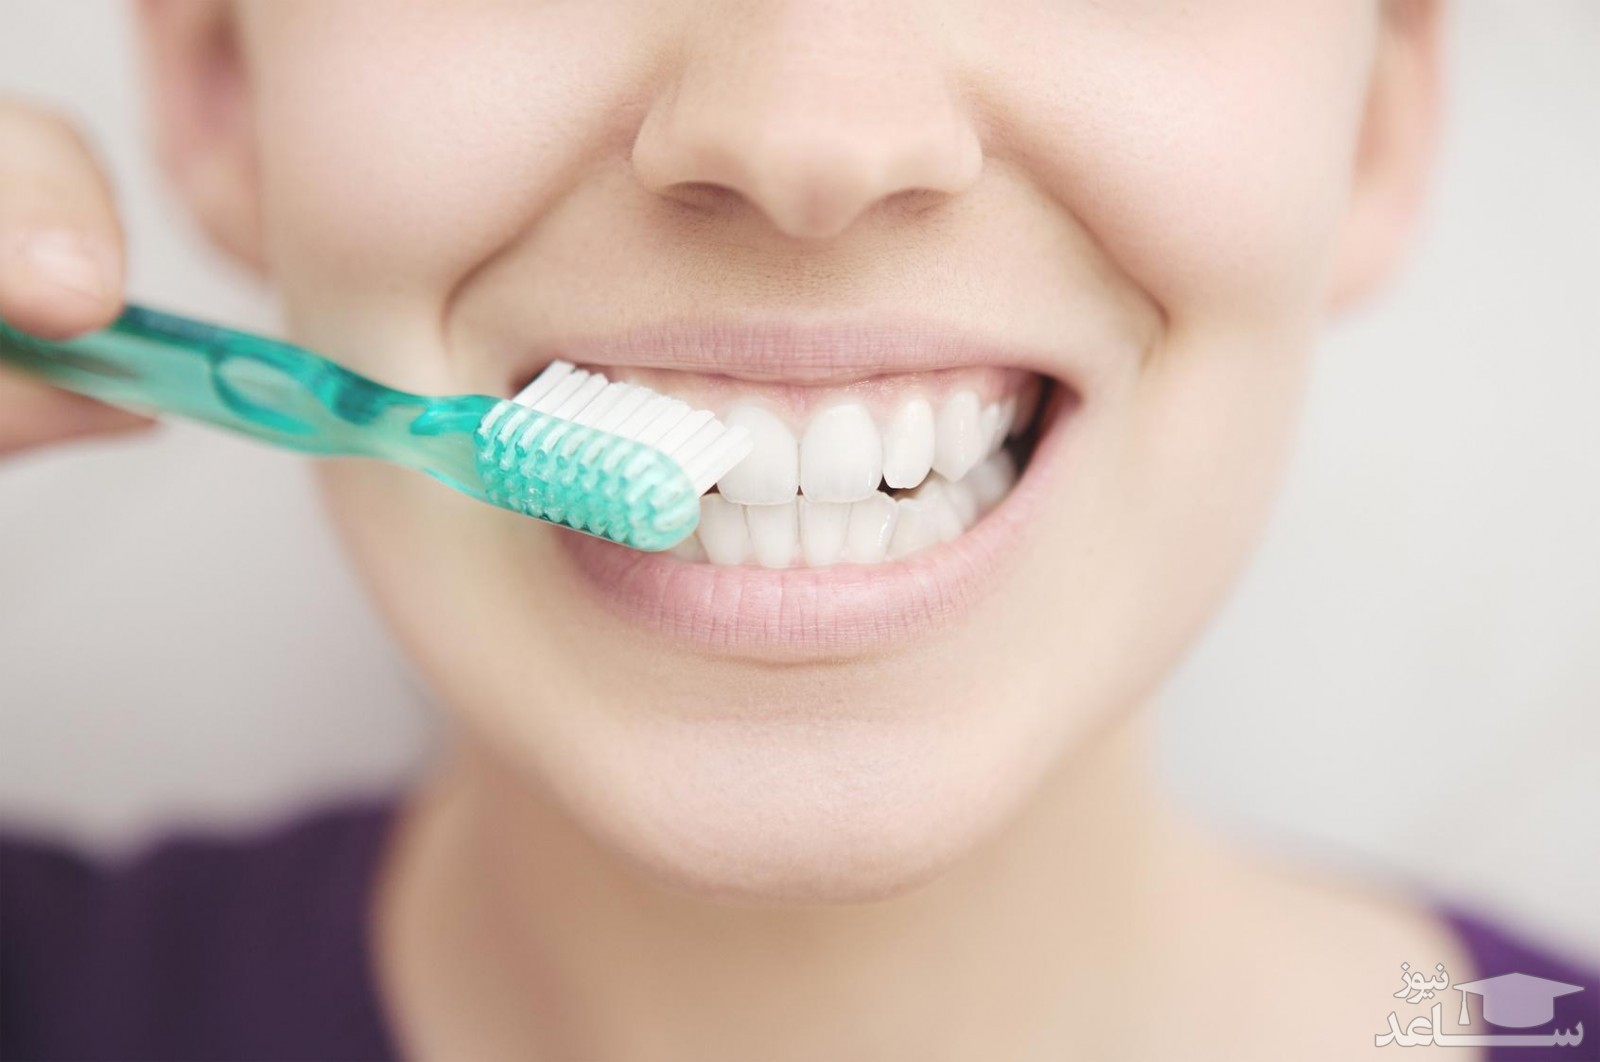 سوالات متداول در مورد انتخاب نوع ایمپلنت دندان